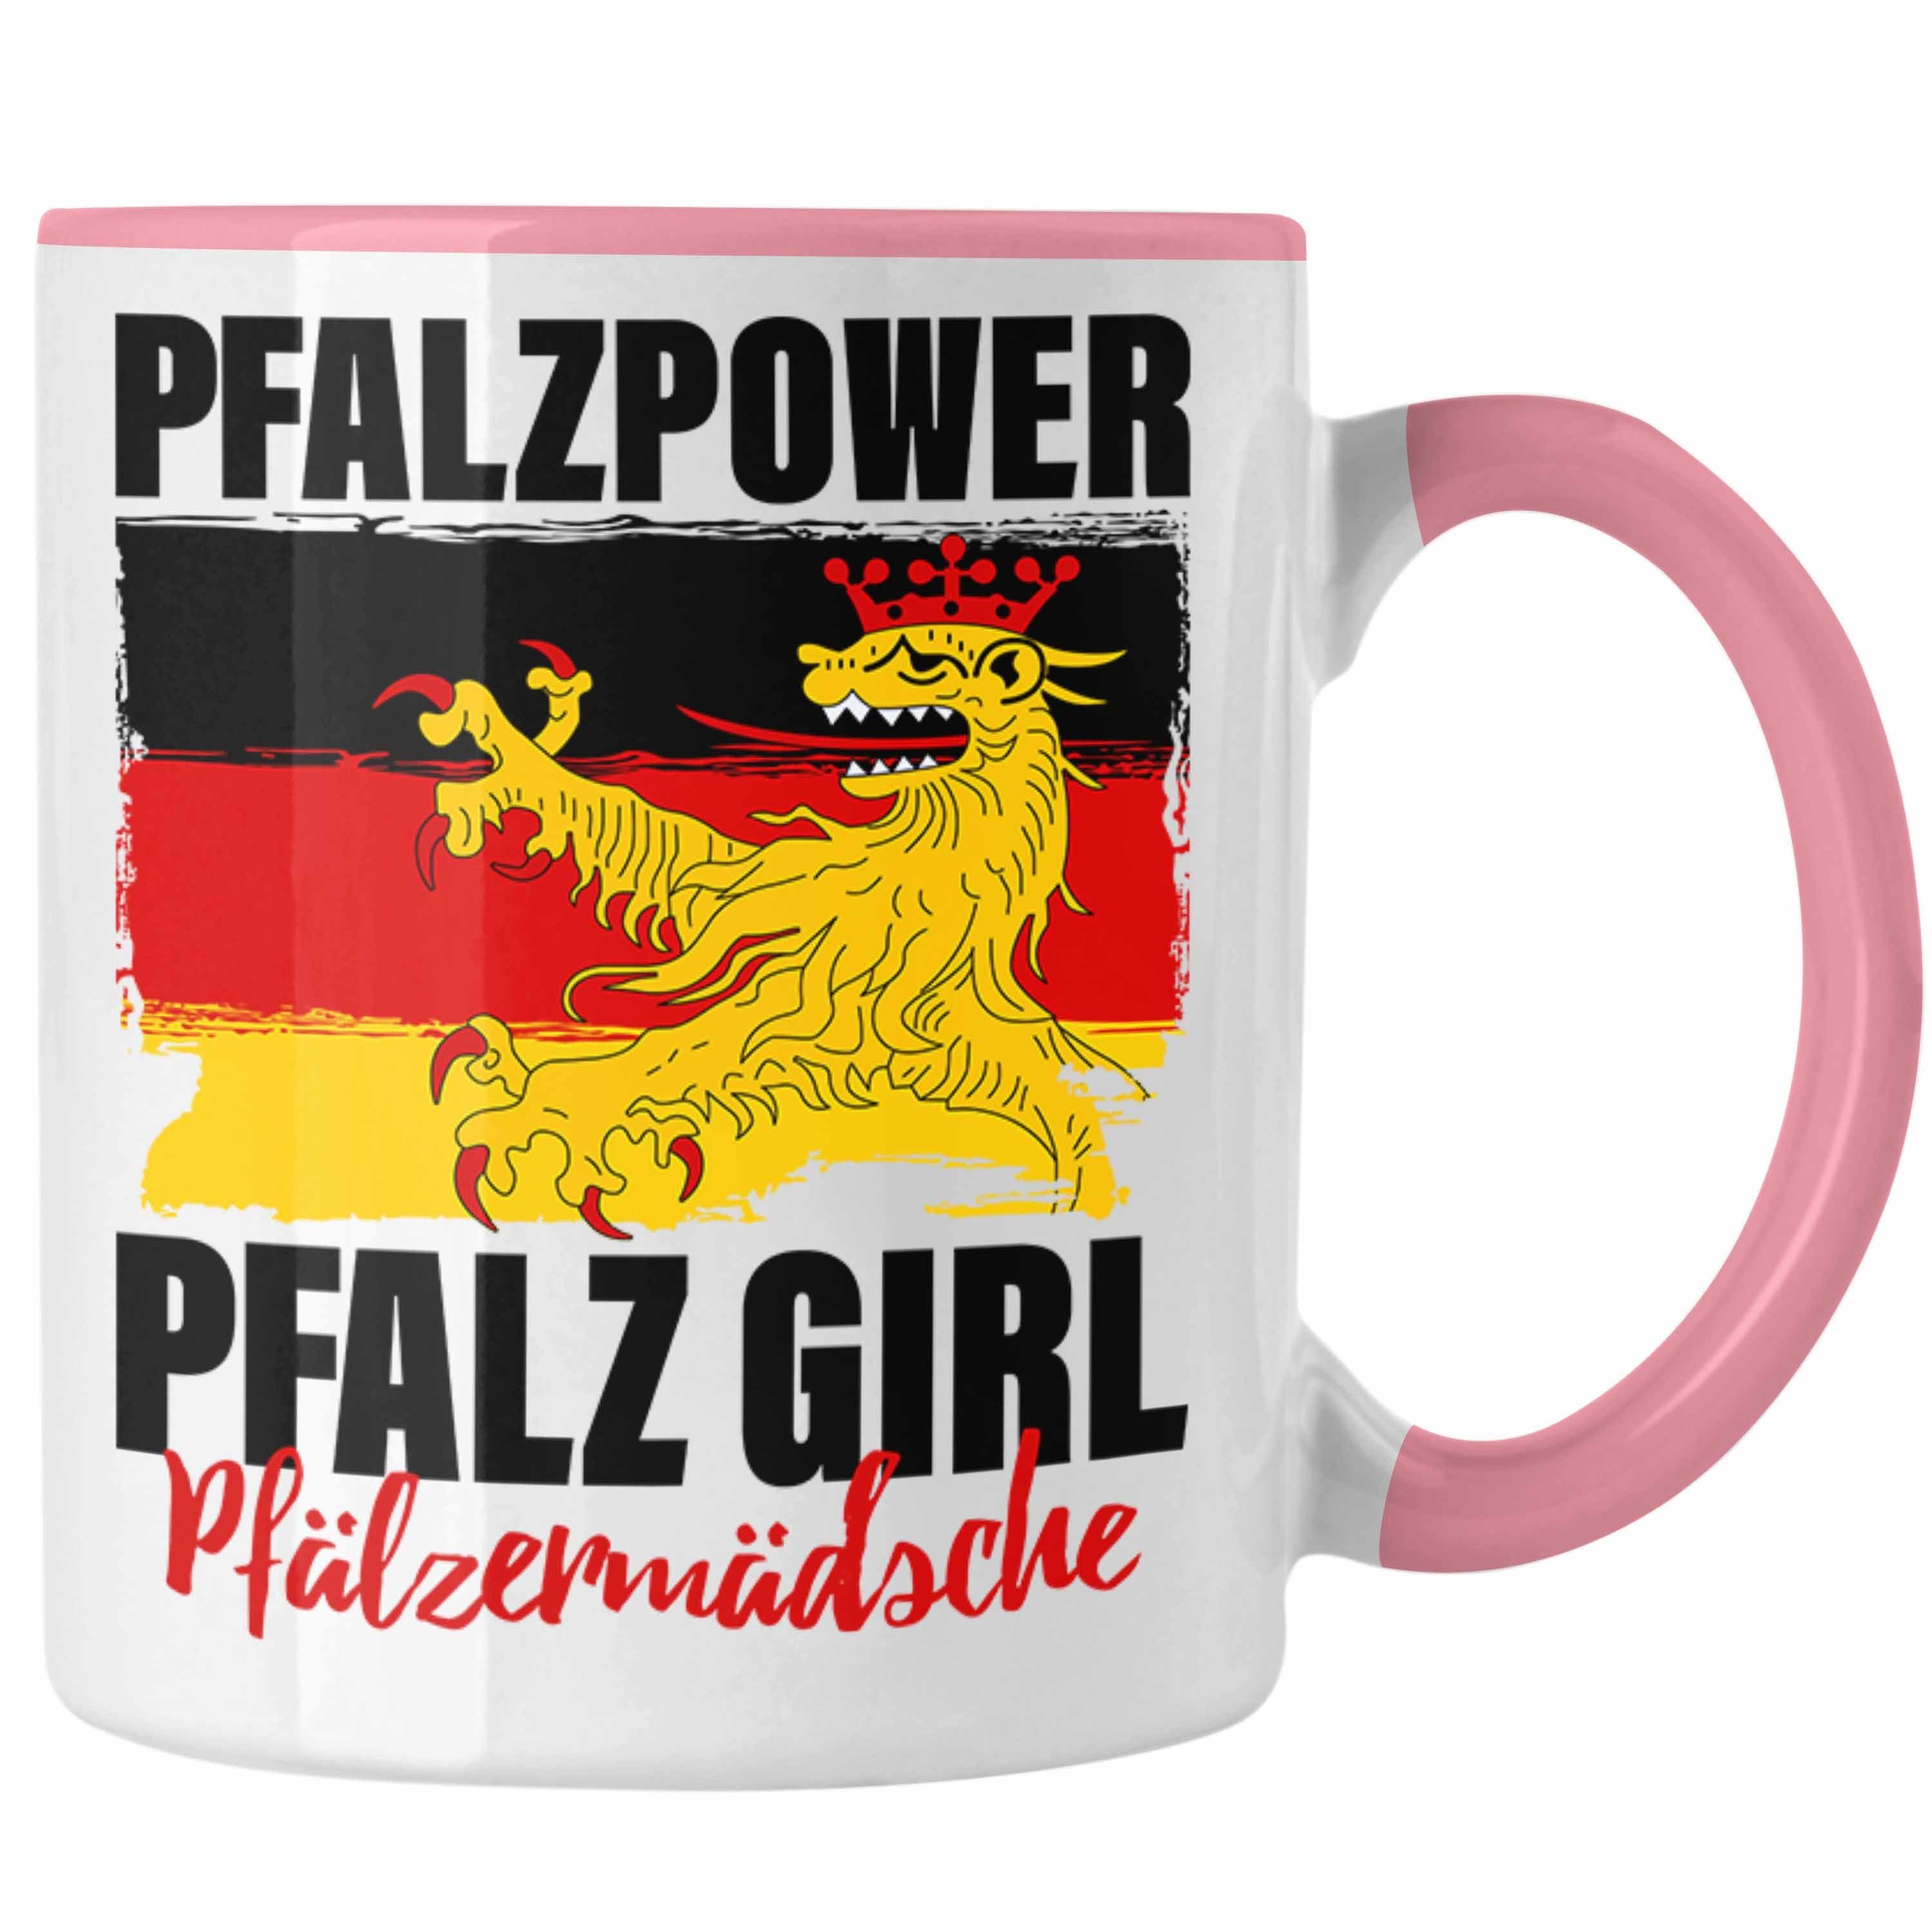 Trendation Tasse Pfalzpower Tasse Geschenk Frauen Pfalz Girl Pfalzmädsche Rosa